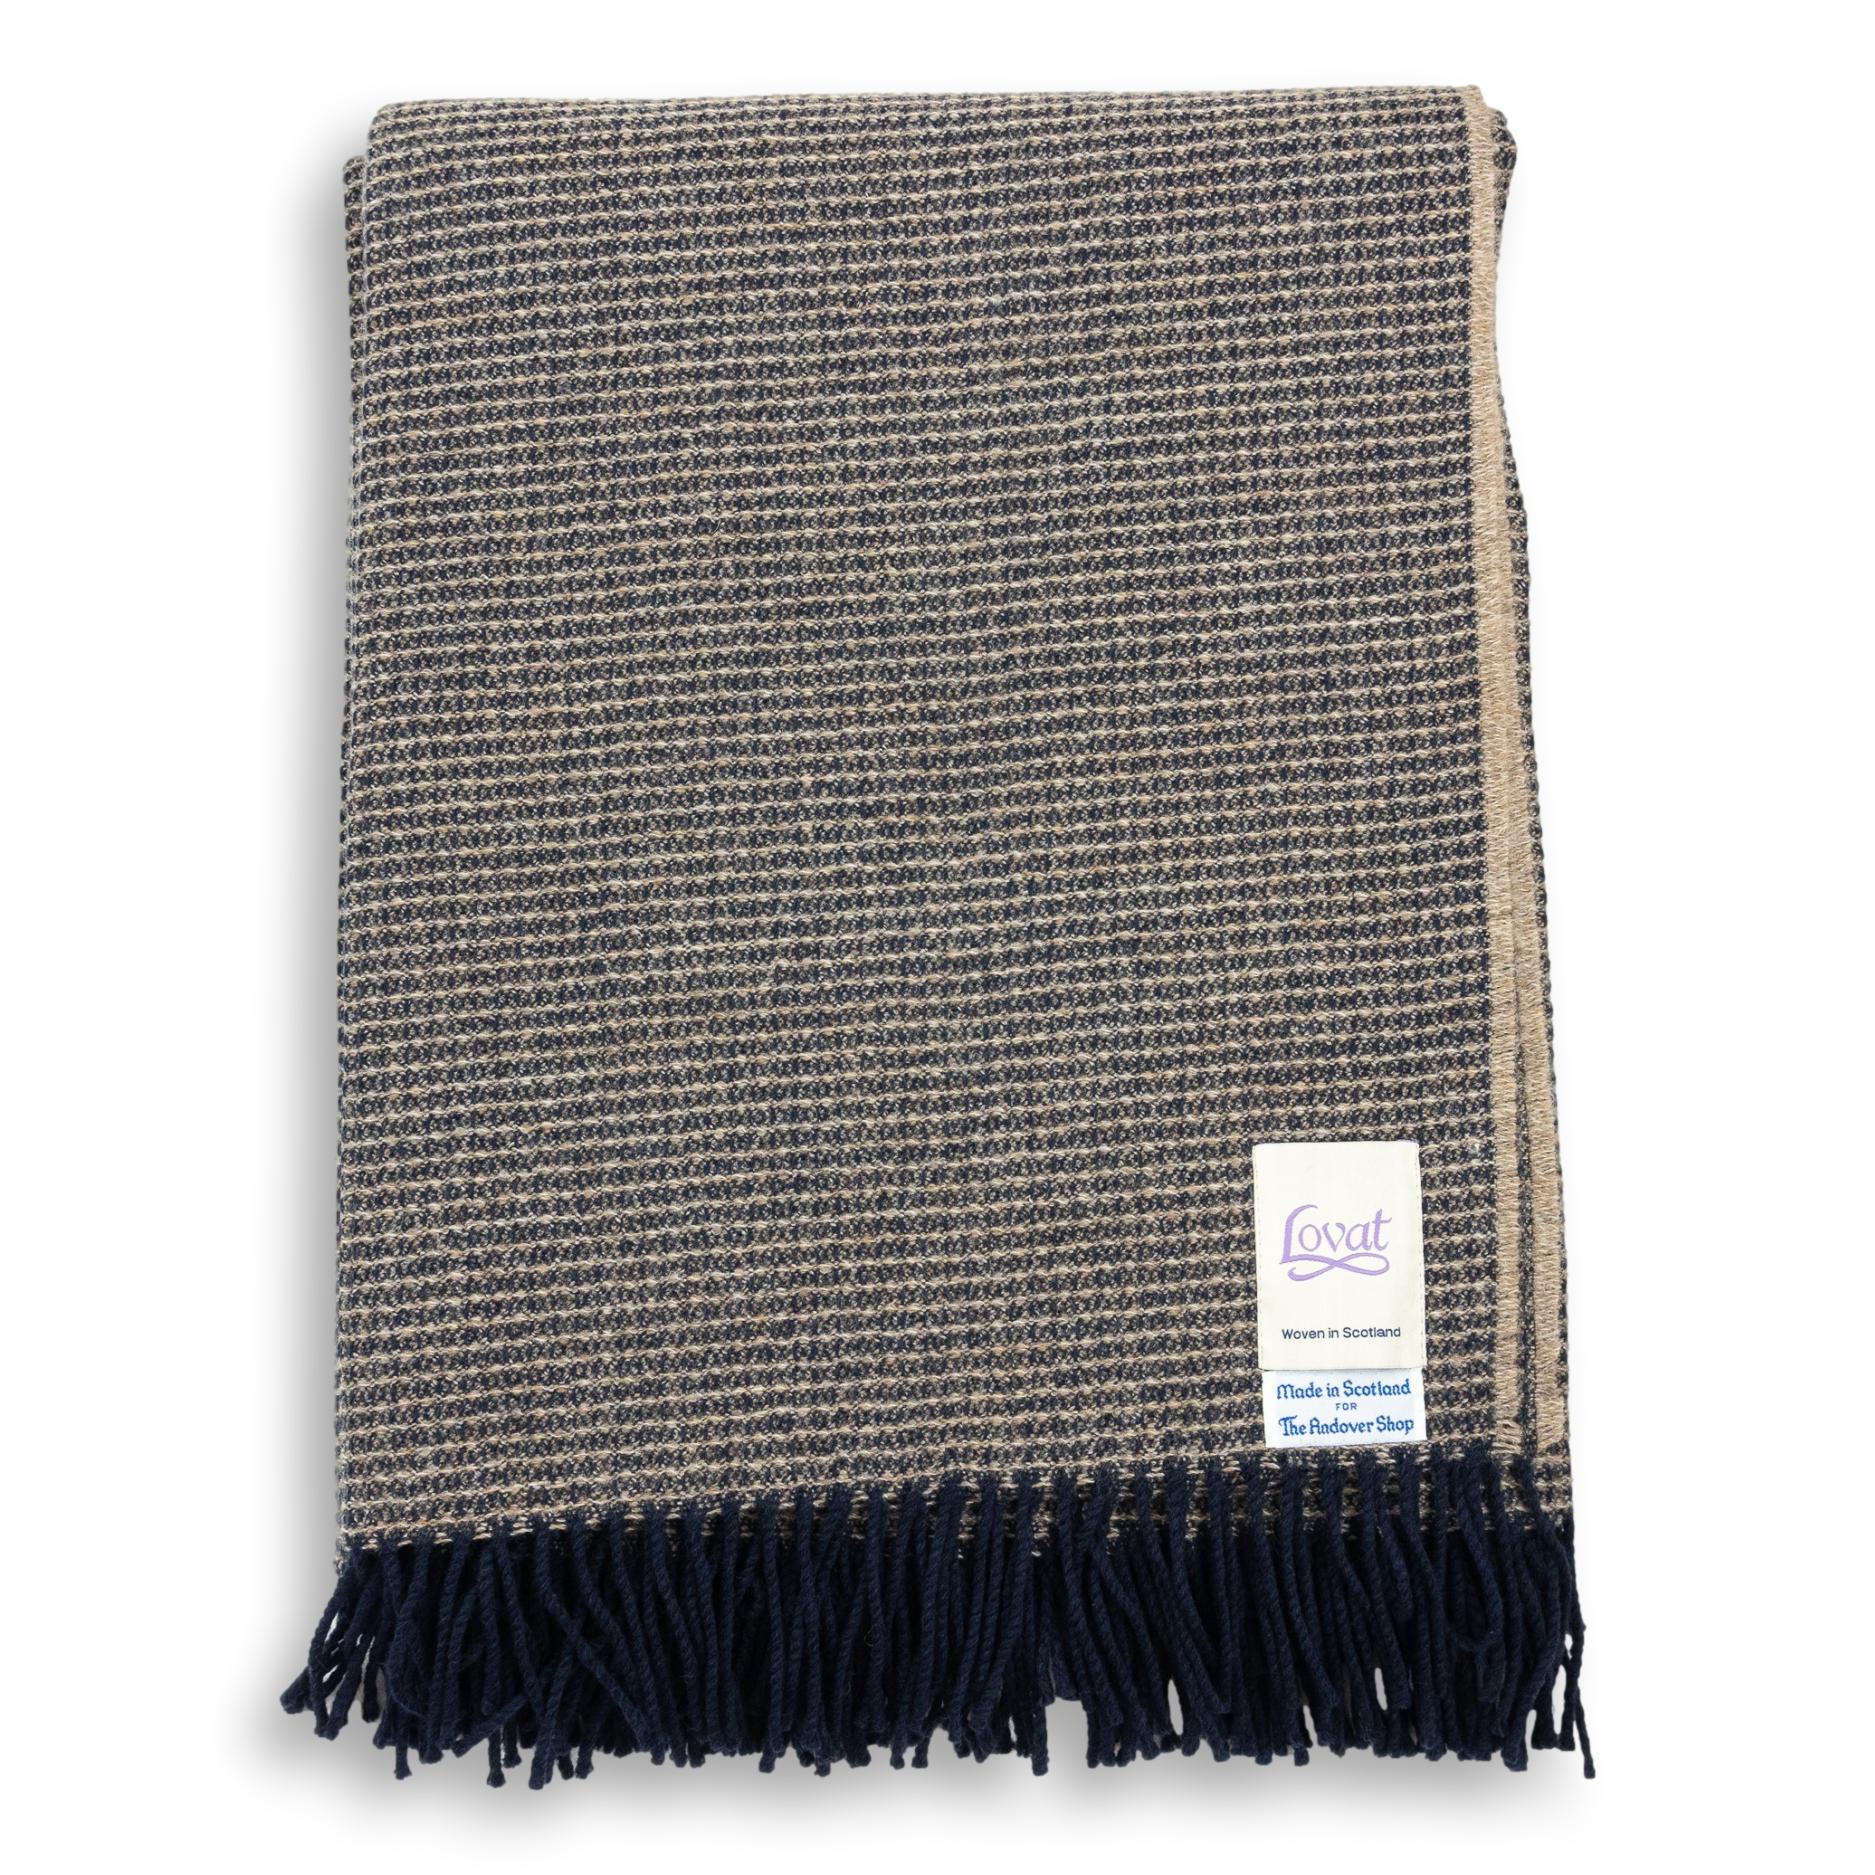 100% Wool Honeycomb Blanket